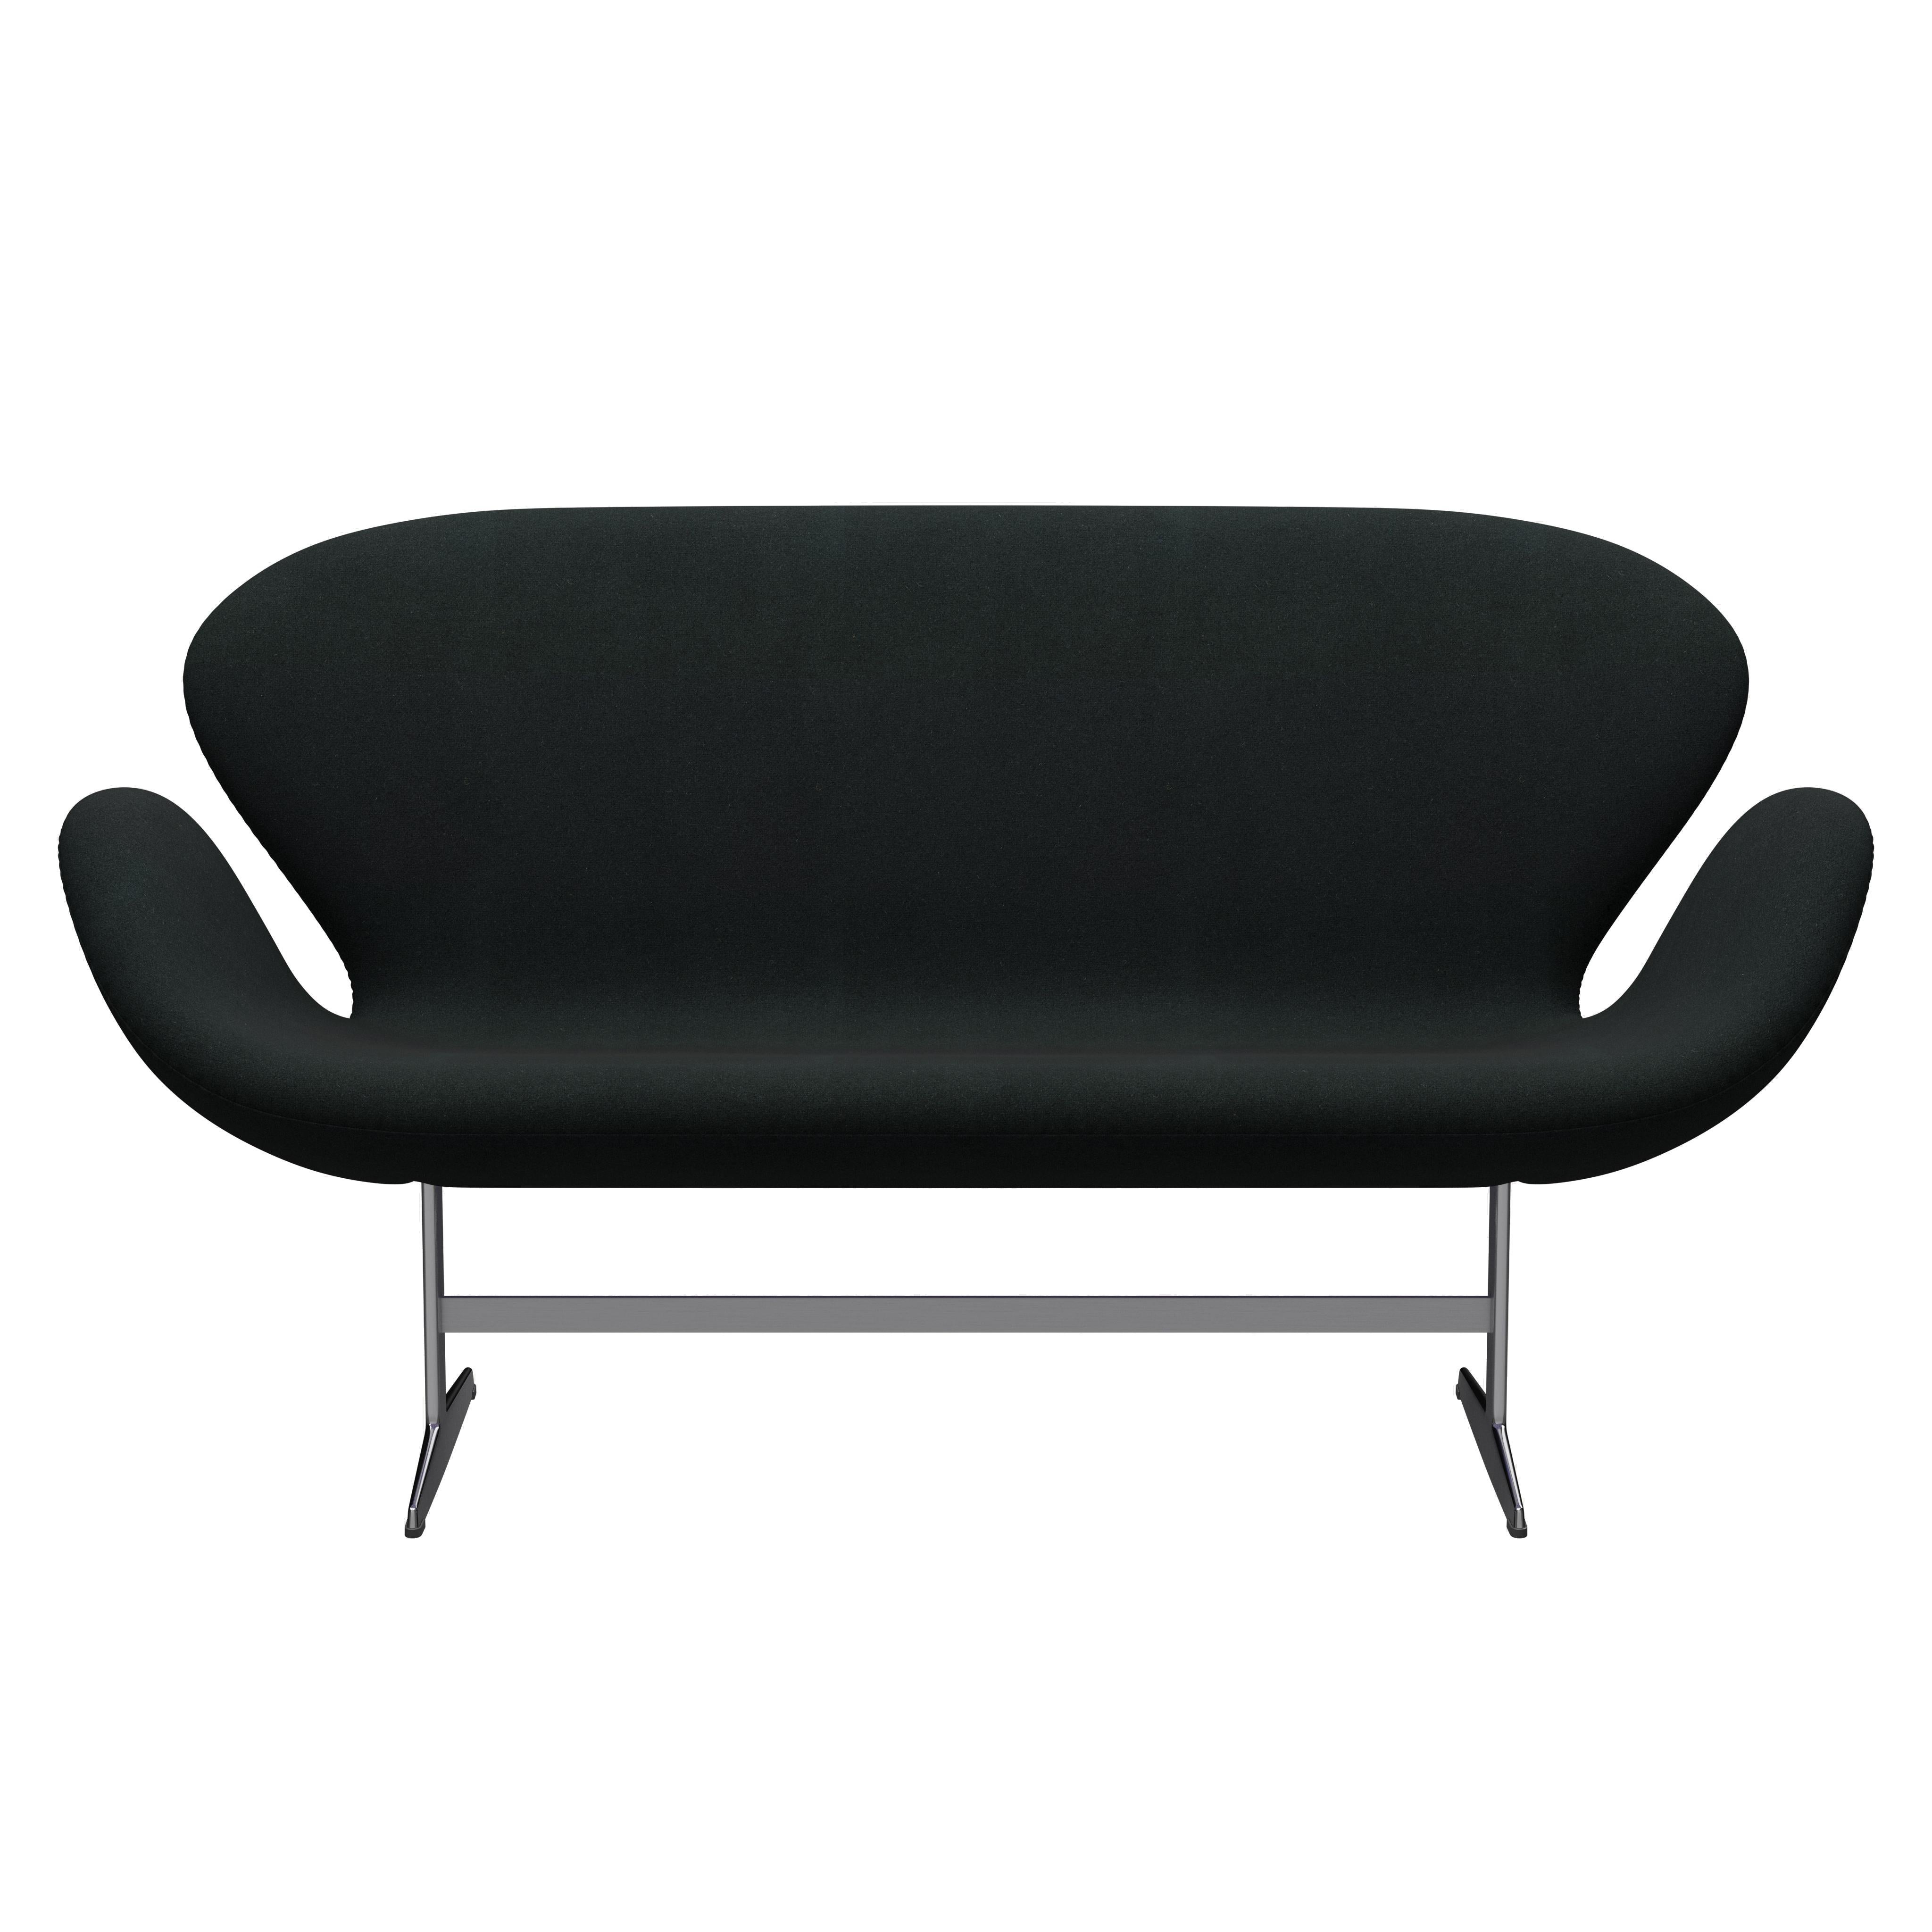 Arne Jacobsen 'Swan' Sofa for Fritz Hansen in Fabric Upholstery (Cat. 1) For Sale 2